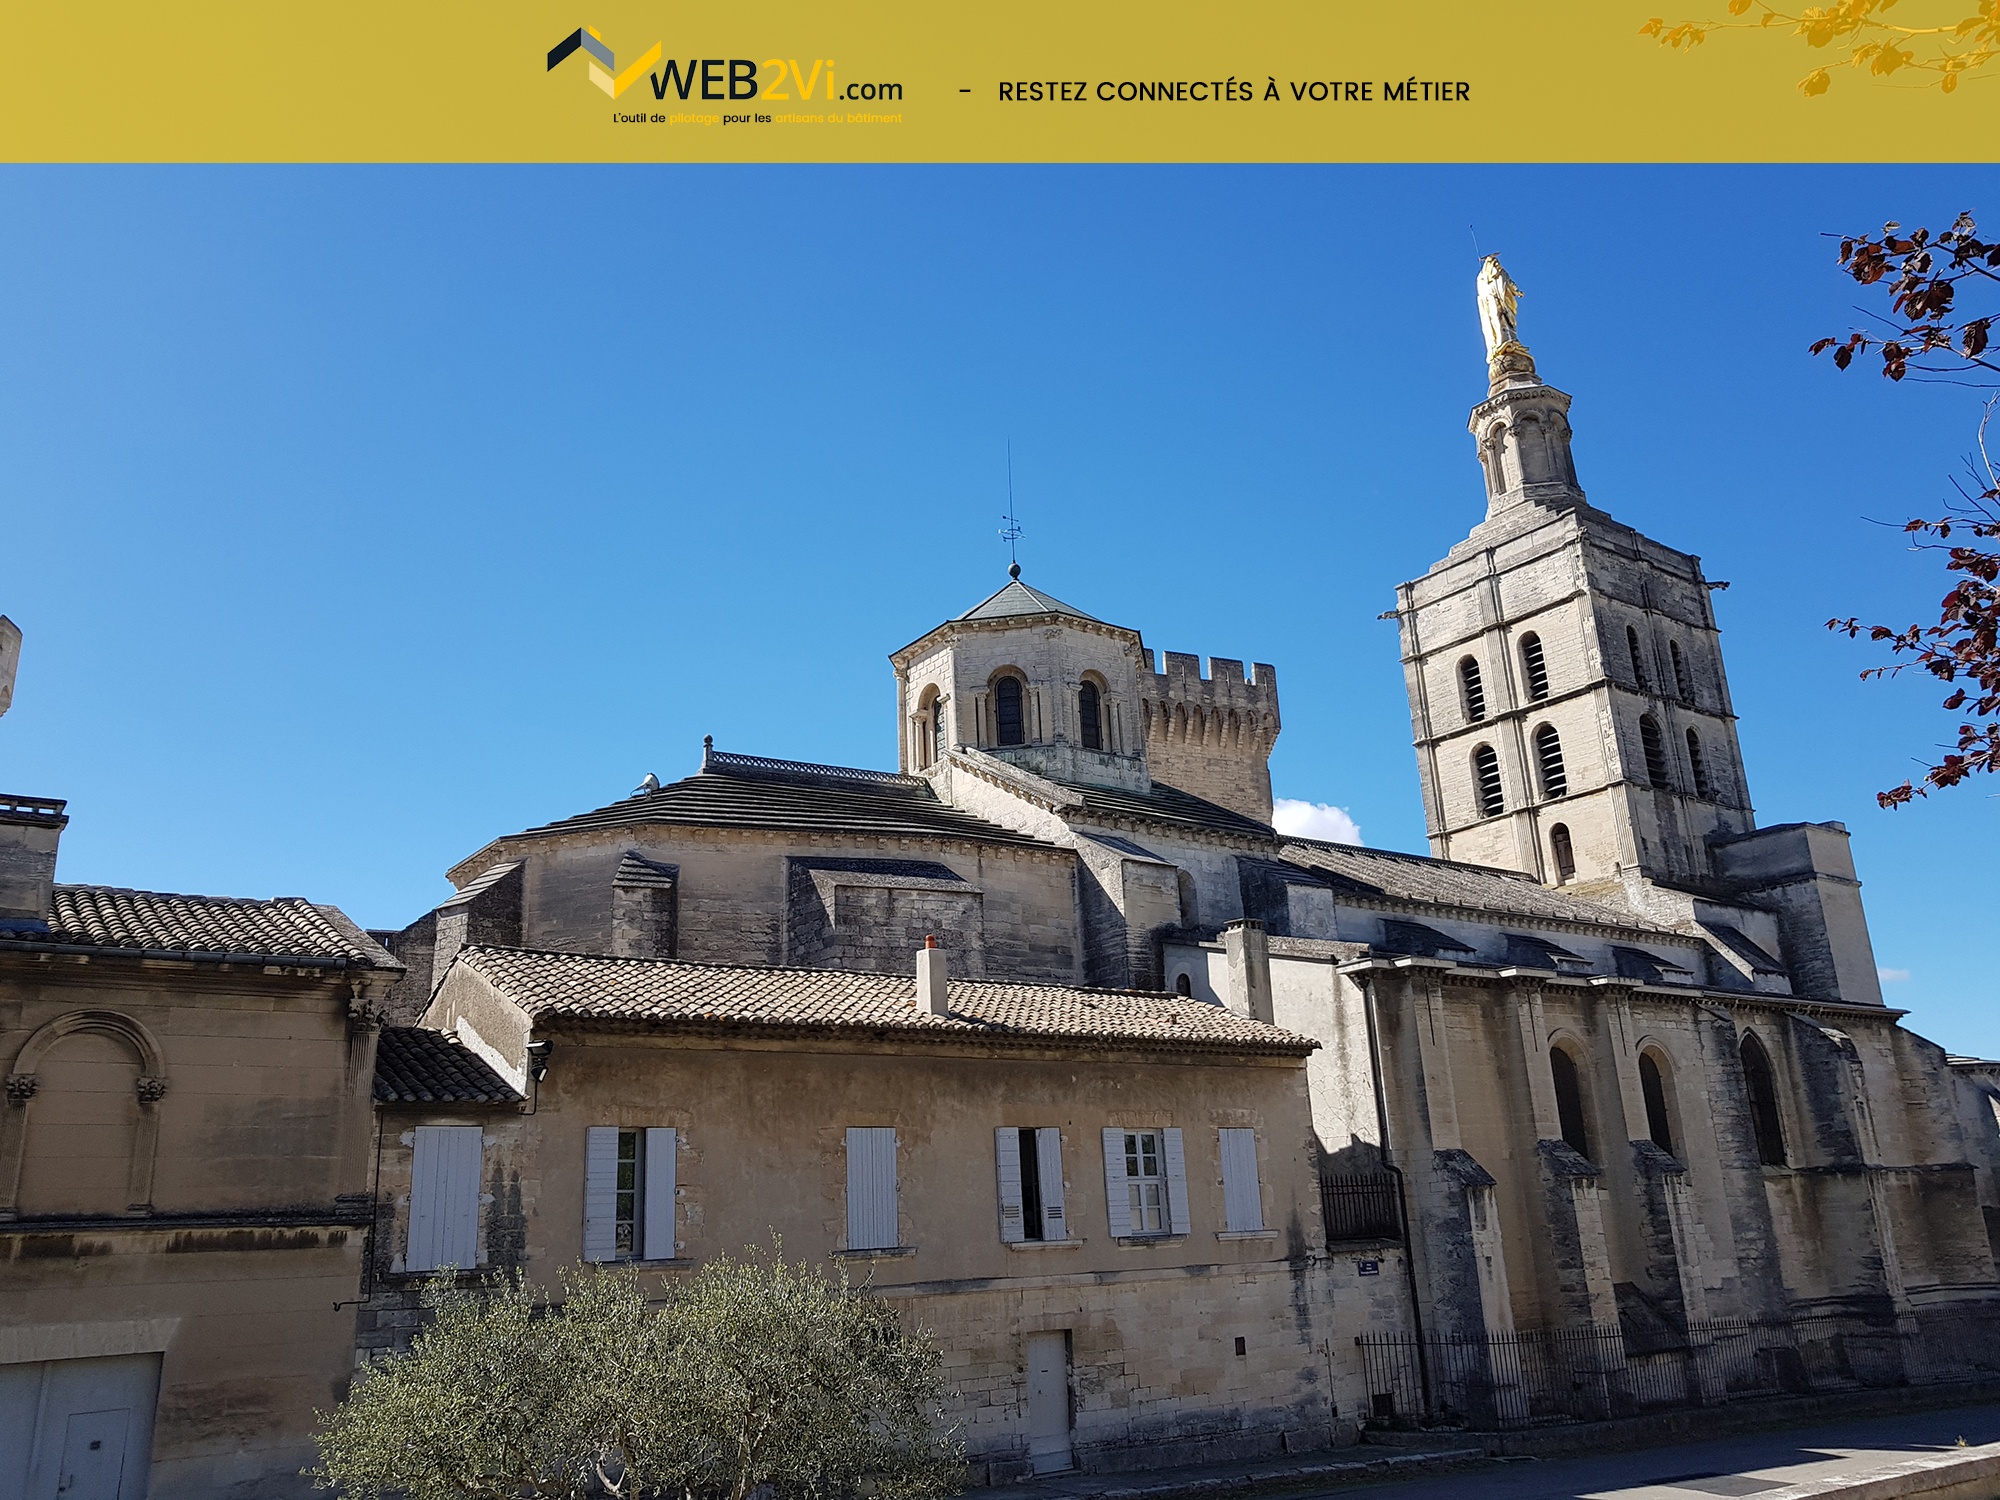 Rencontres UNCP 2018 Avignon Palais des Papes Web2vi drone Parrot métré 3D